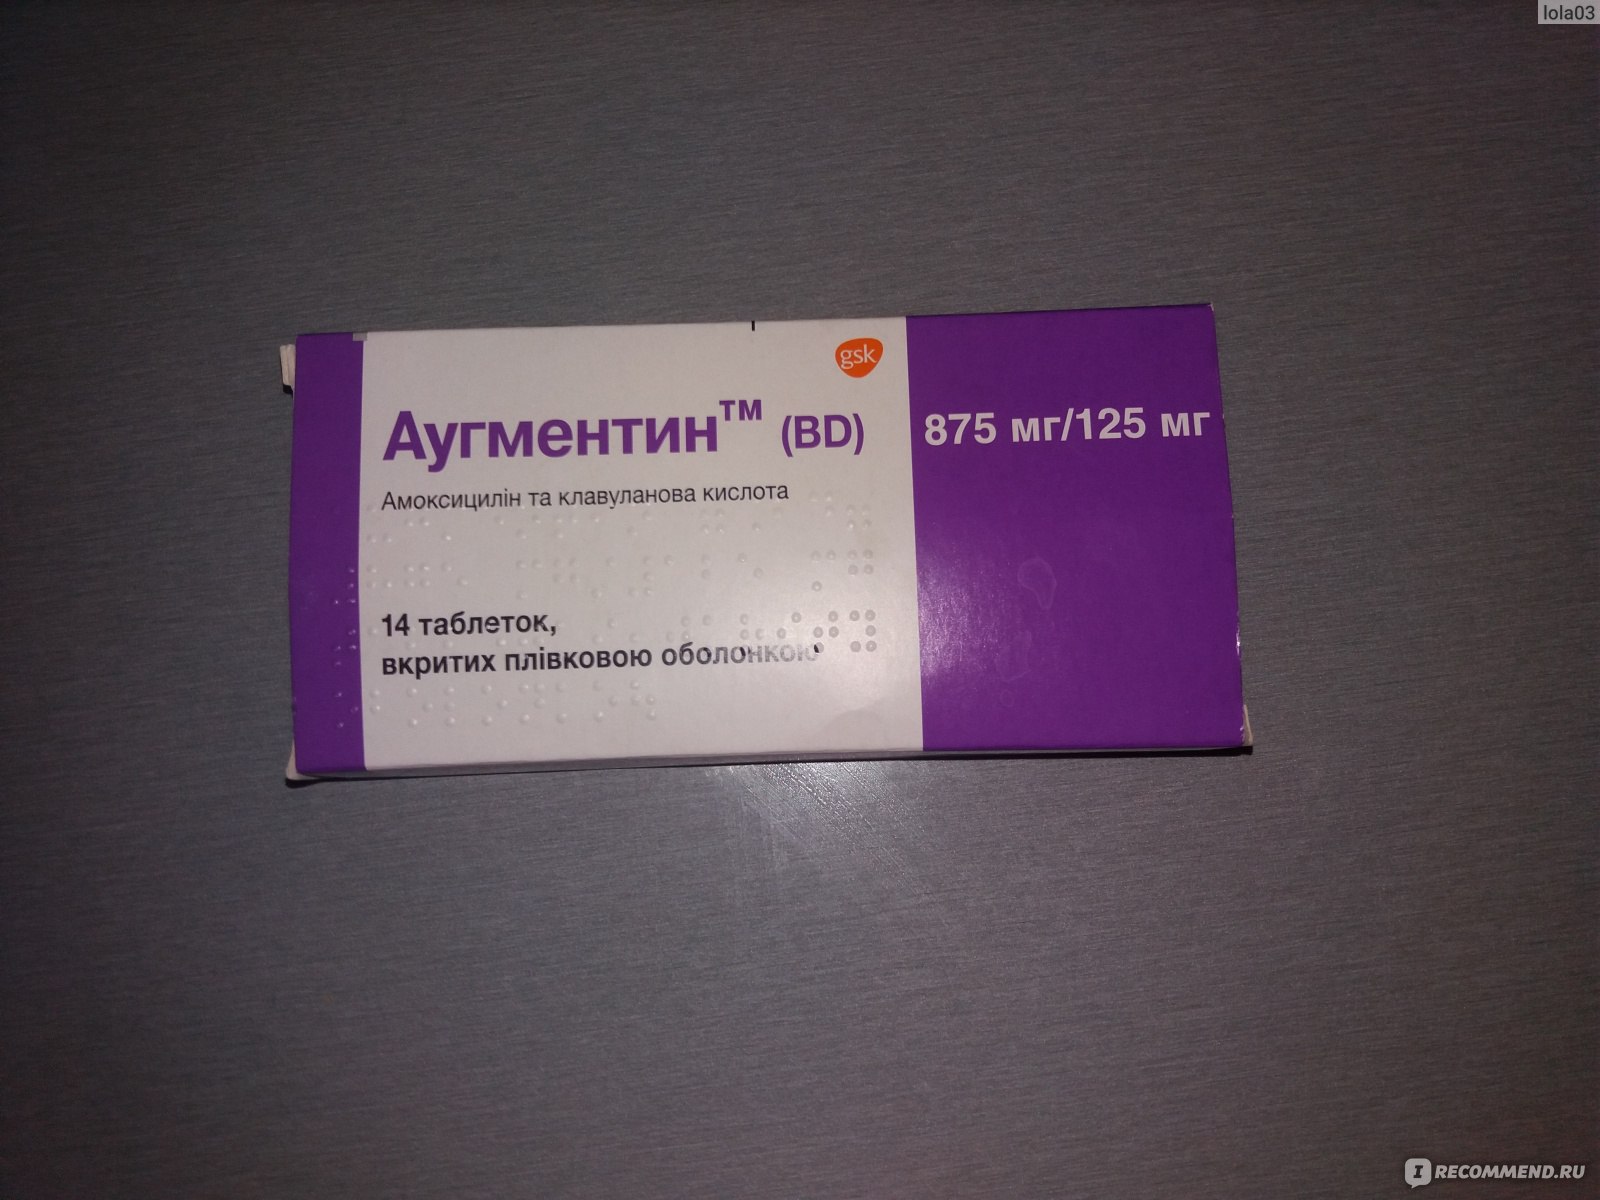 Антибиотик GlaxoSmithKline Аугментин BD 875 mg/125 mg фото